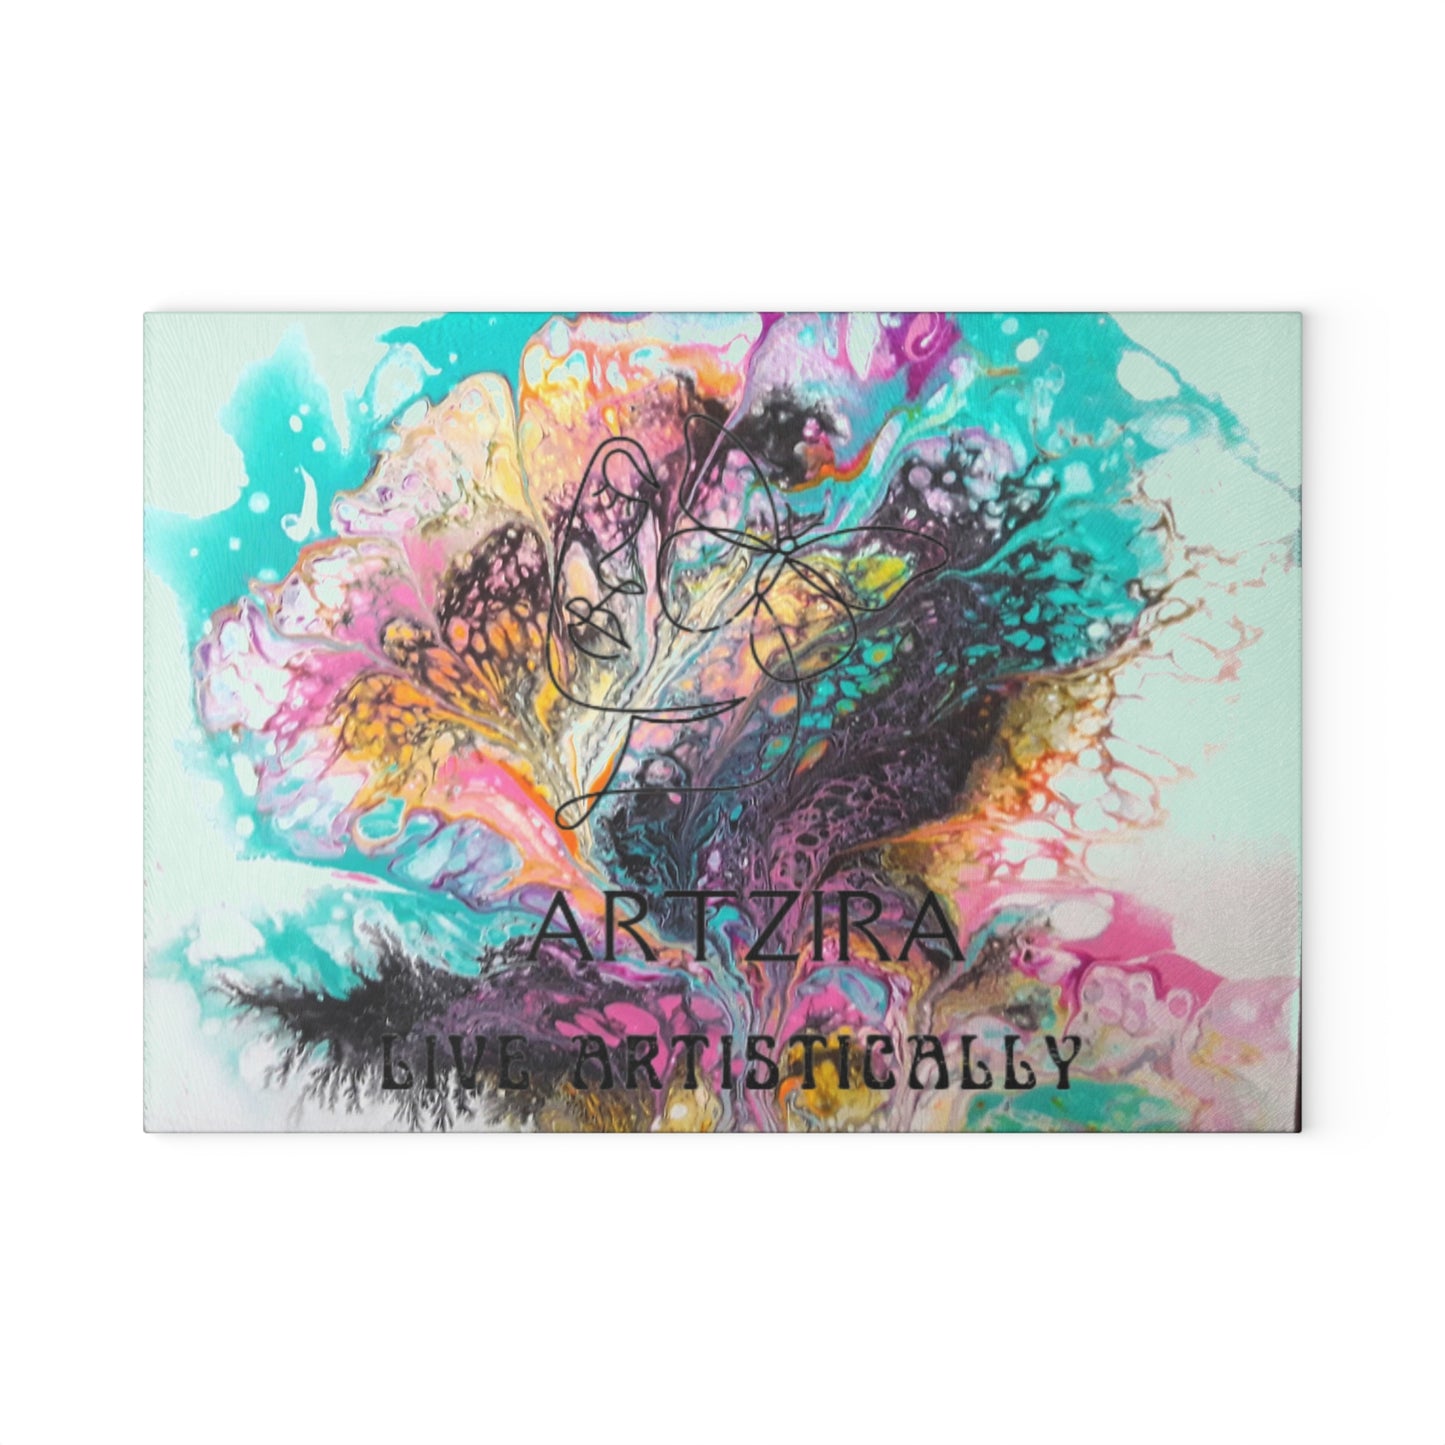 ARTZIRA DESIGNER Glass Cutting Board-Abstract Art Print Design -2 Sizes